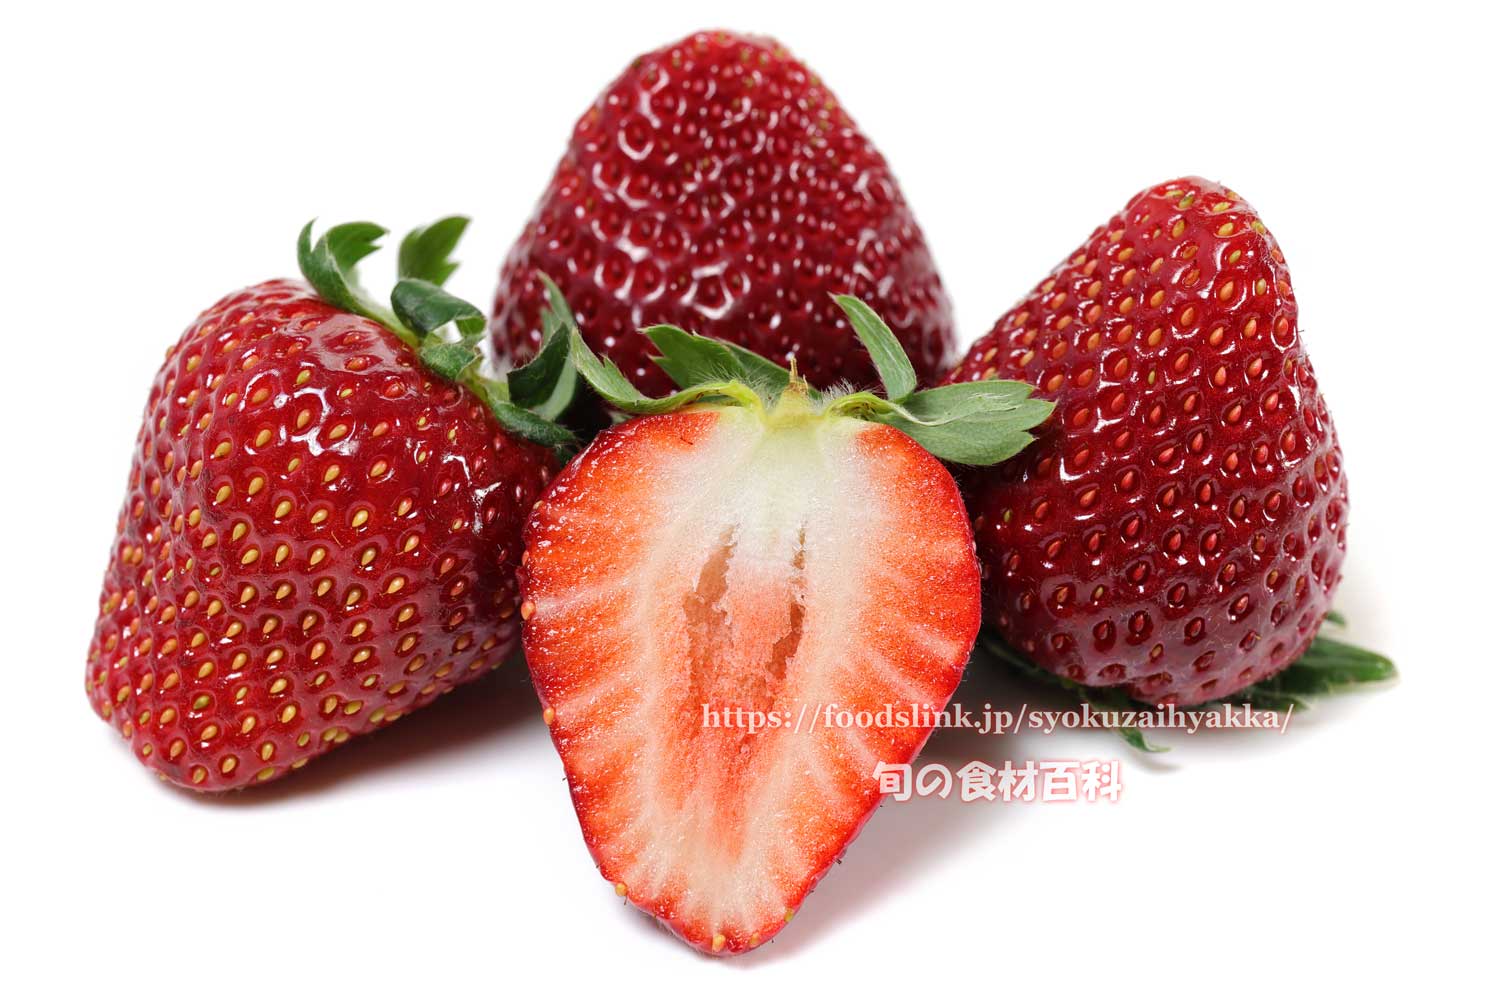 イチゴ 苺 いちご の栄養価と効用 旬の果物百科